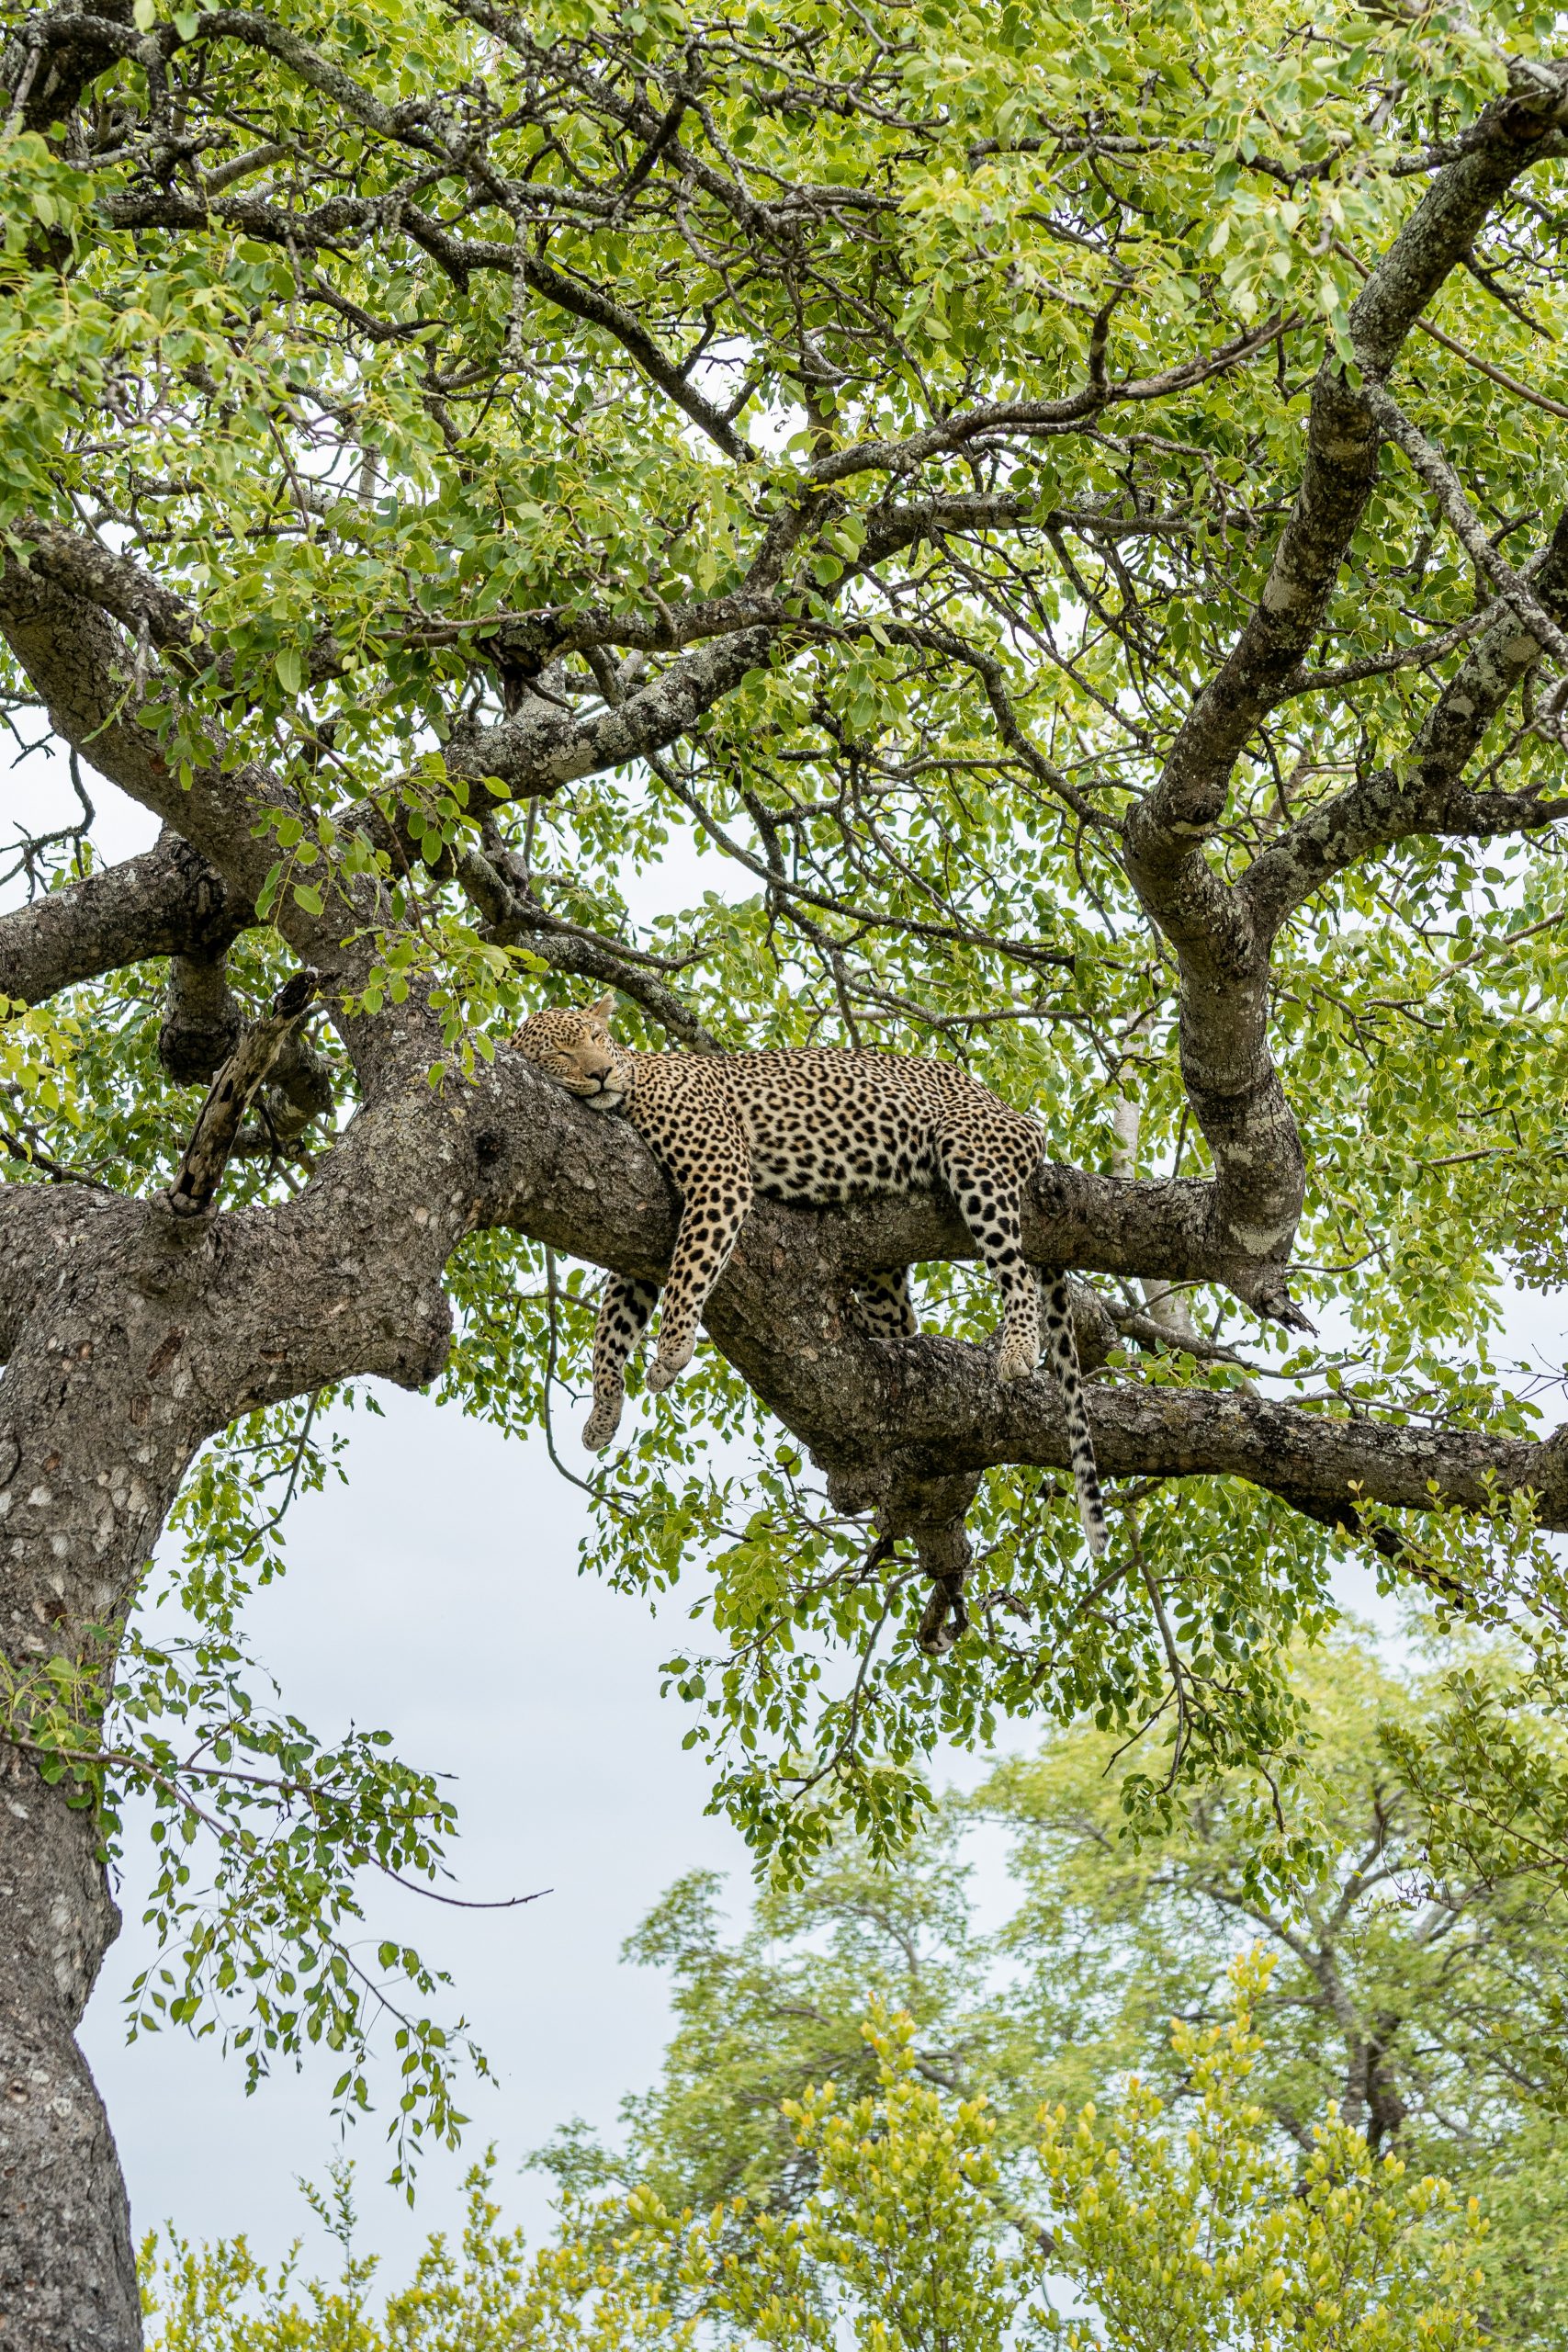 Leopardo a dormir numa árvore